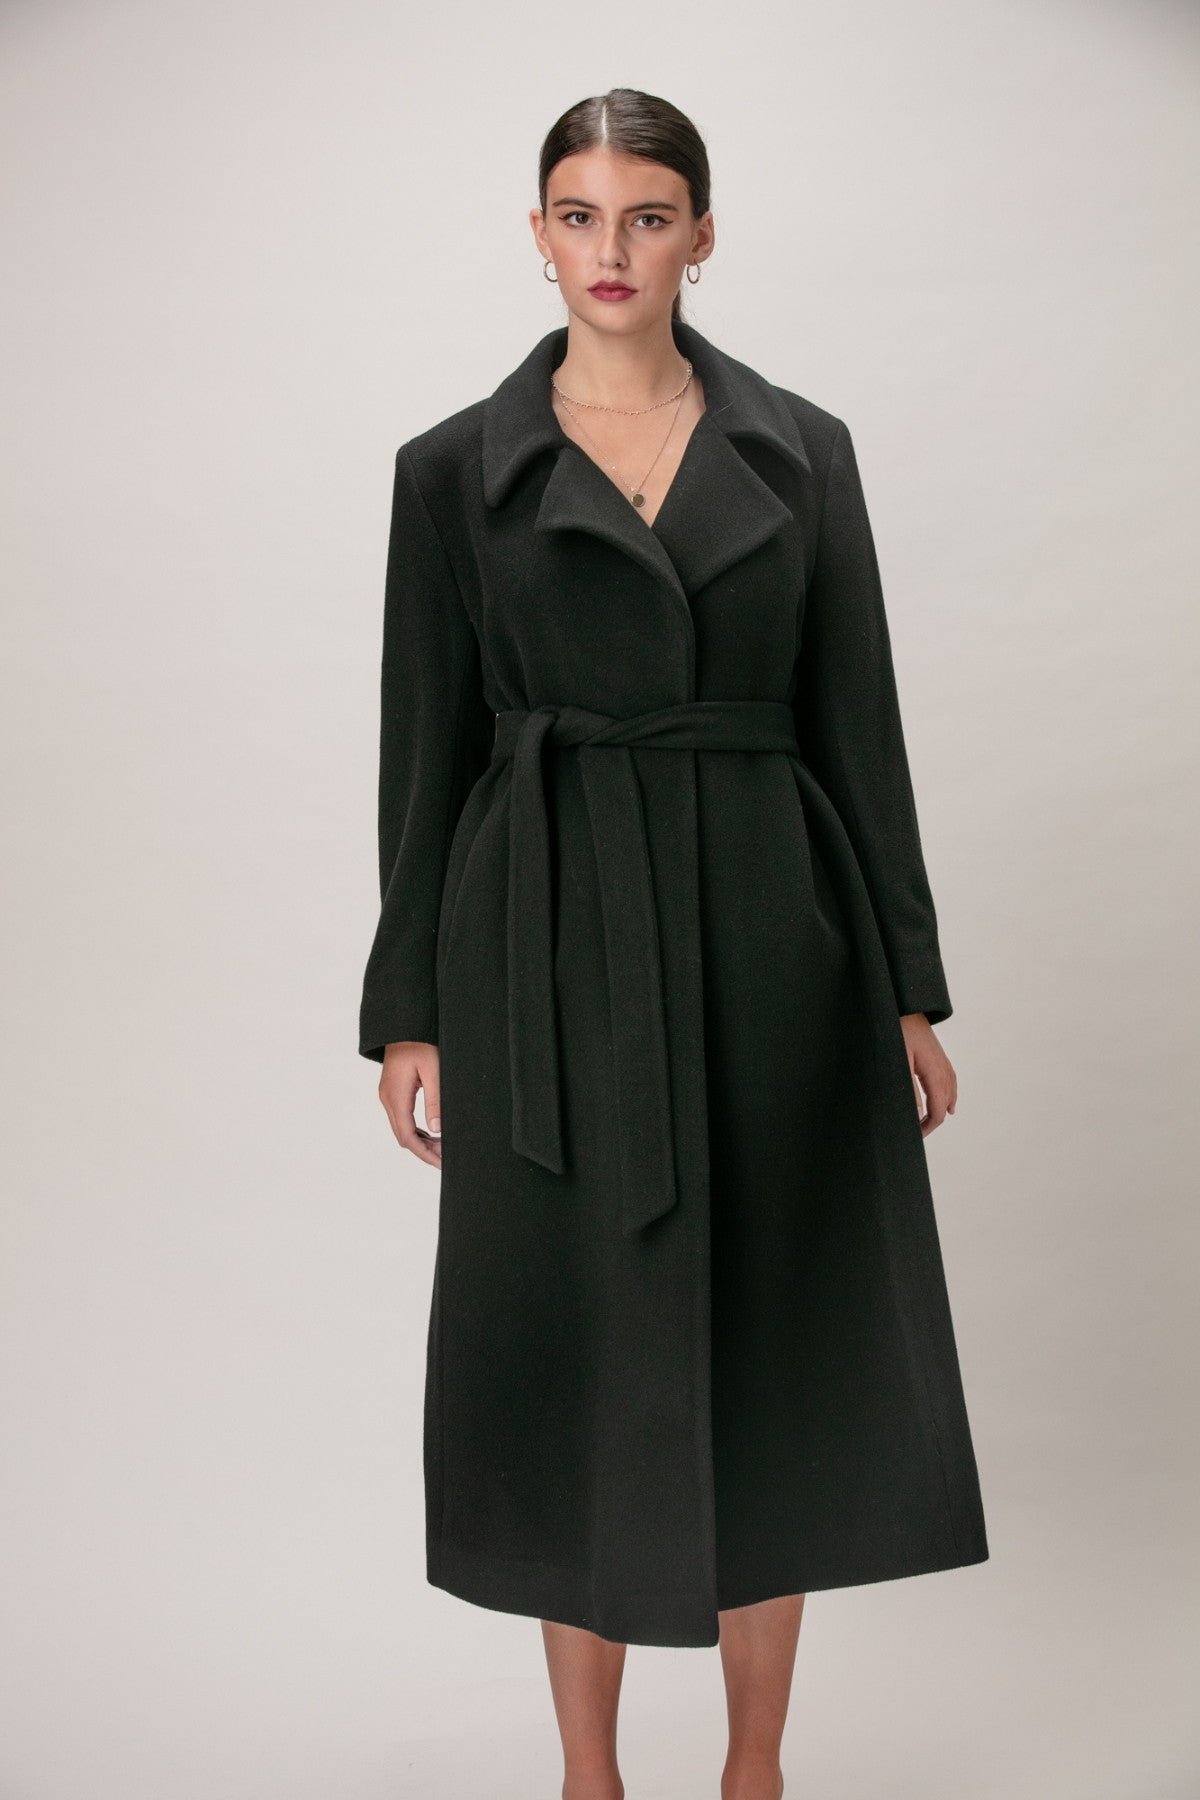 SCARLETT Wool & Cashmere Long Wrap Coat 1451 – LORNE'S COATS